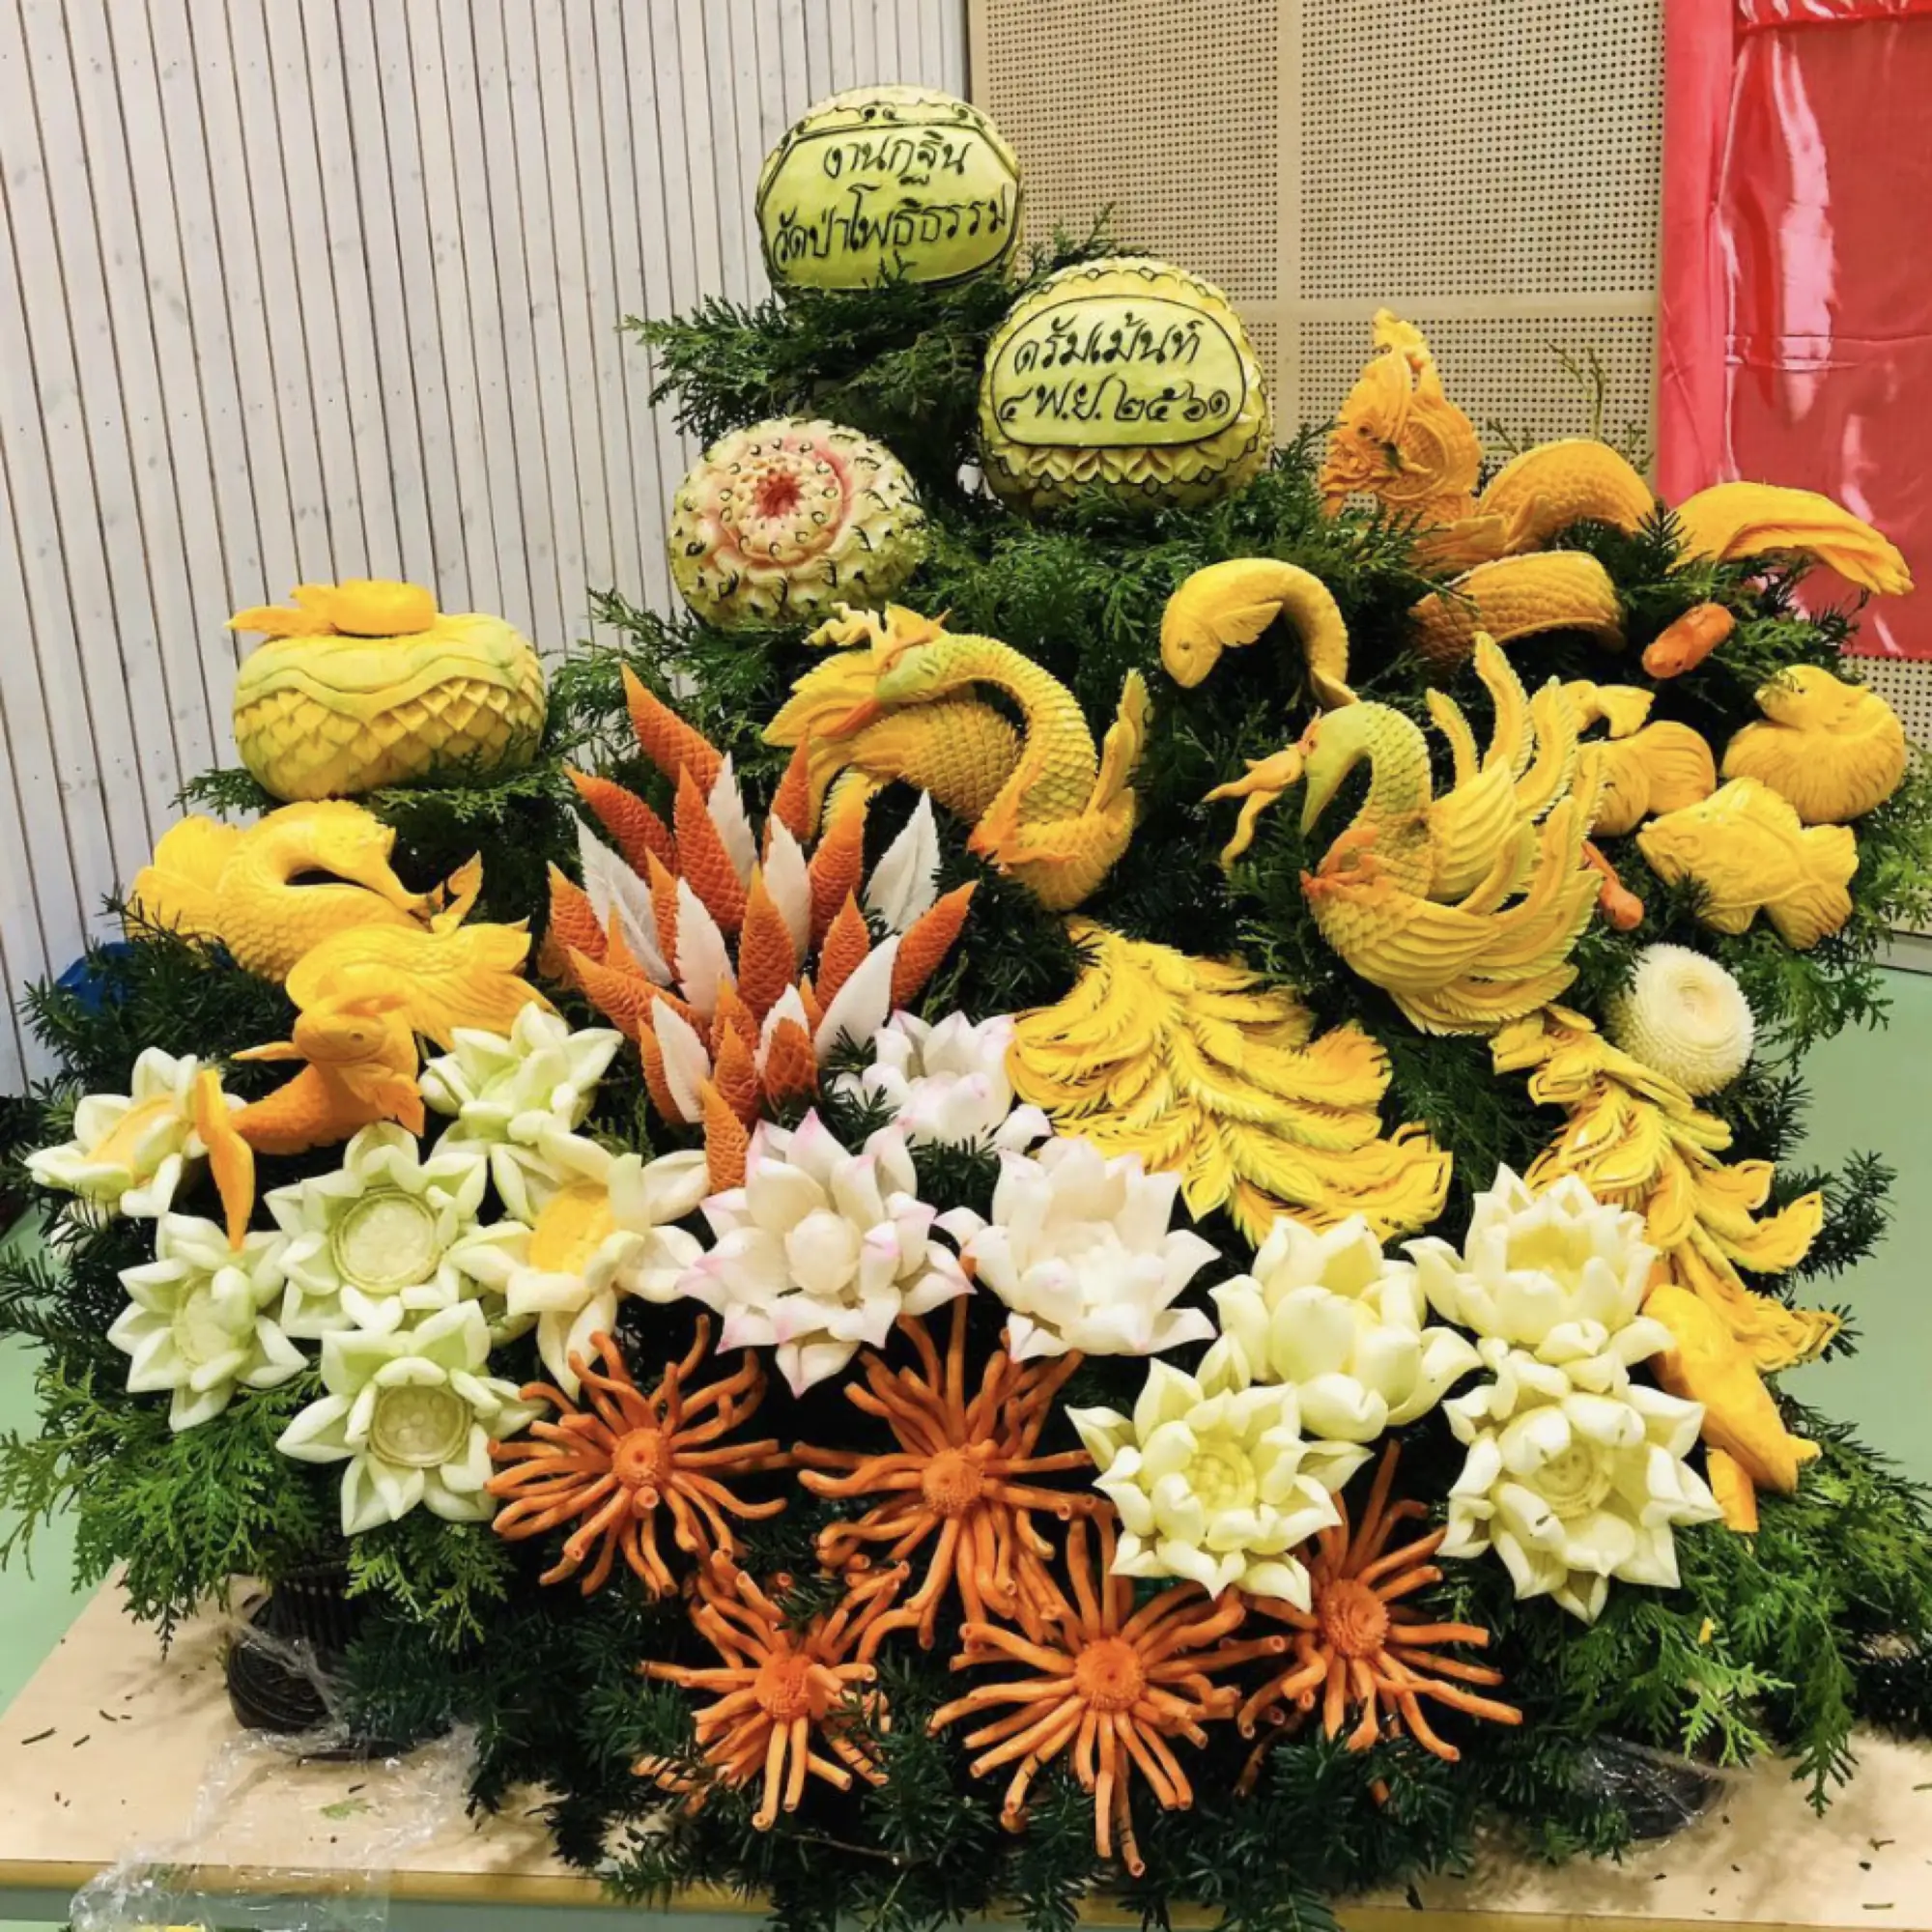 泰國人擅長把水果雕刻成花卉的圖案（圖片來源：IG@supattragravningenfruitcarving）